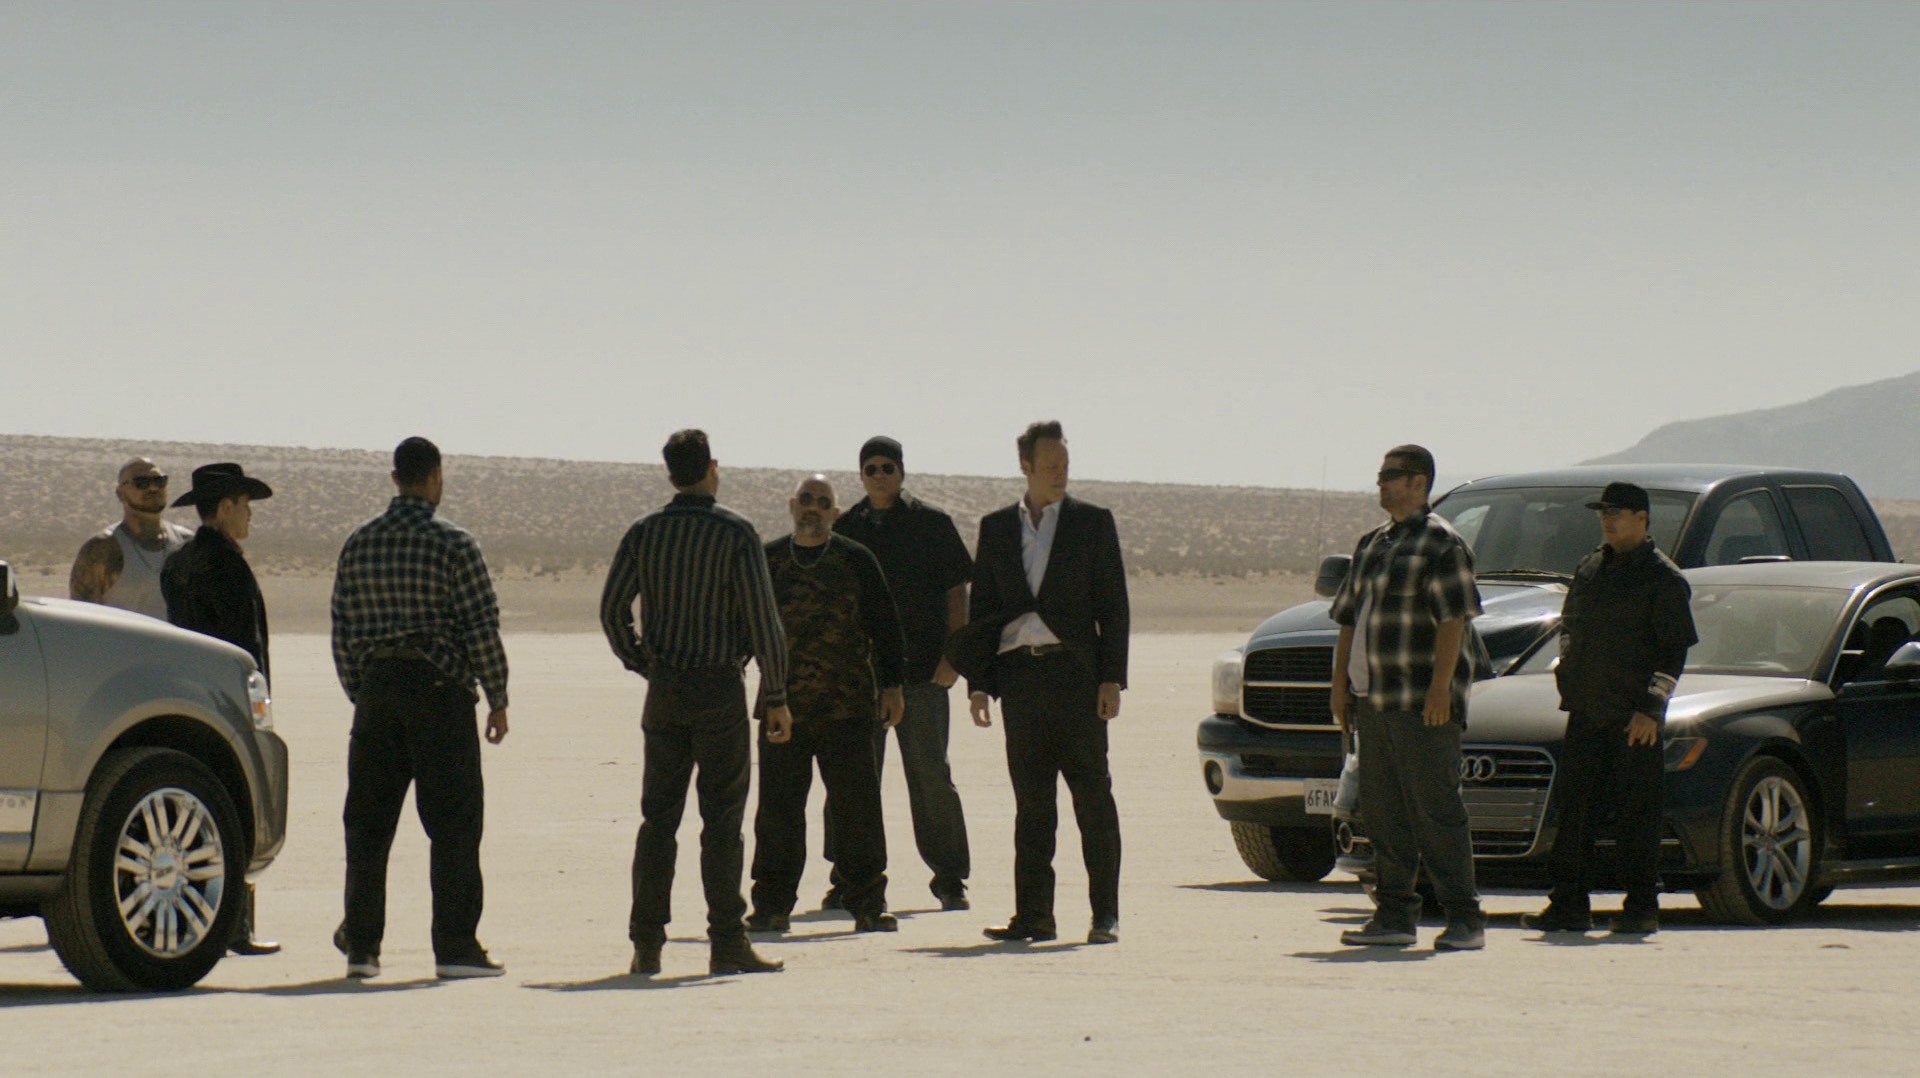 Frank and the Santa Muerte gang in the desert